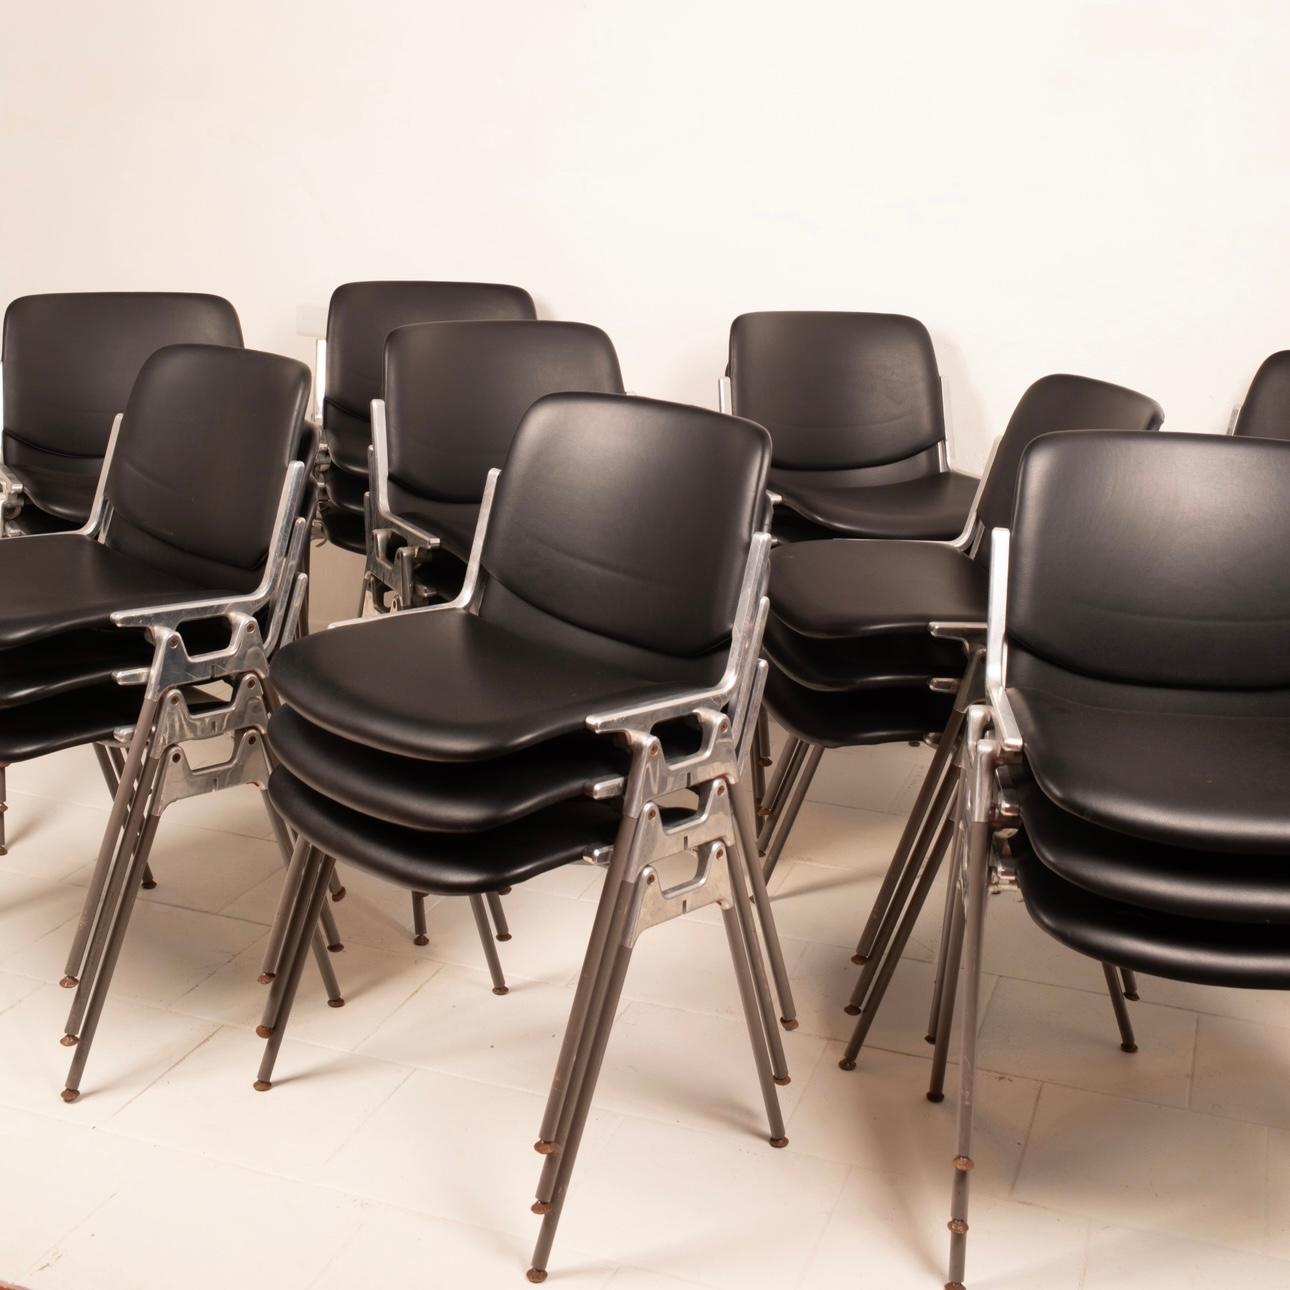 Straordinario set di 30 sedie DSC 106 disegnate da Giancarlo Piretti nel 1965 e prodotte da Anonima Castelli Bologna.
Le sedie si presentano in ottime condizioni vintage, con sedute in sky nero ignifugo, delle quali su molte ancora è conservata